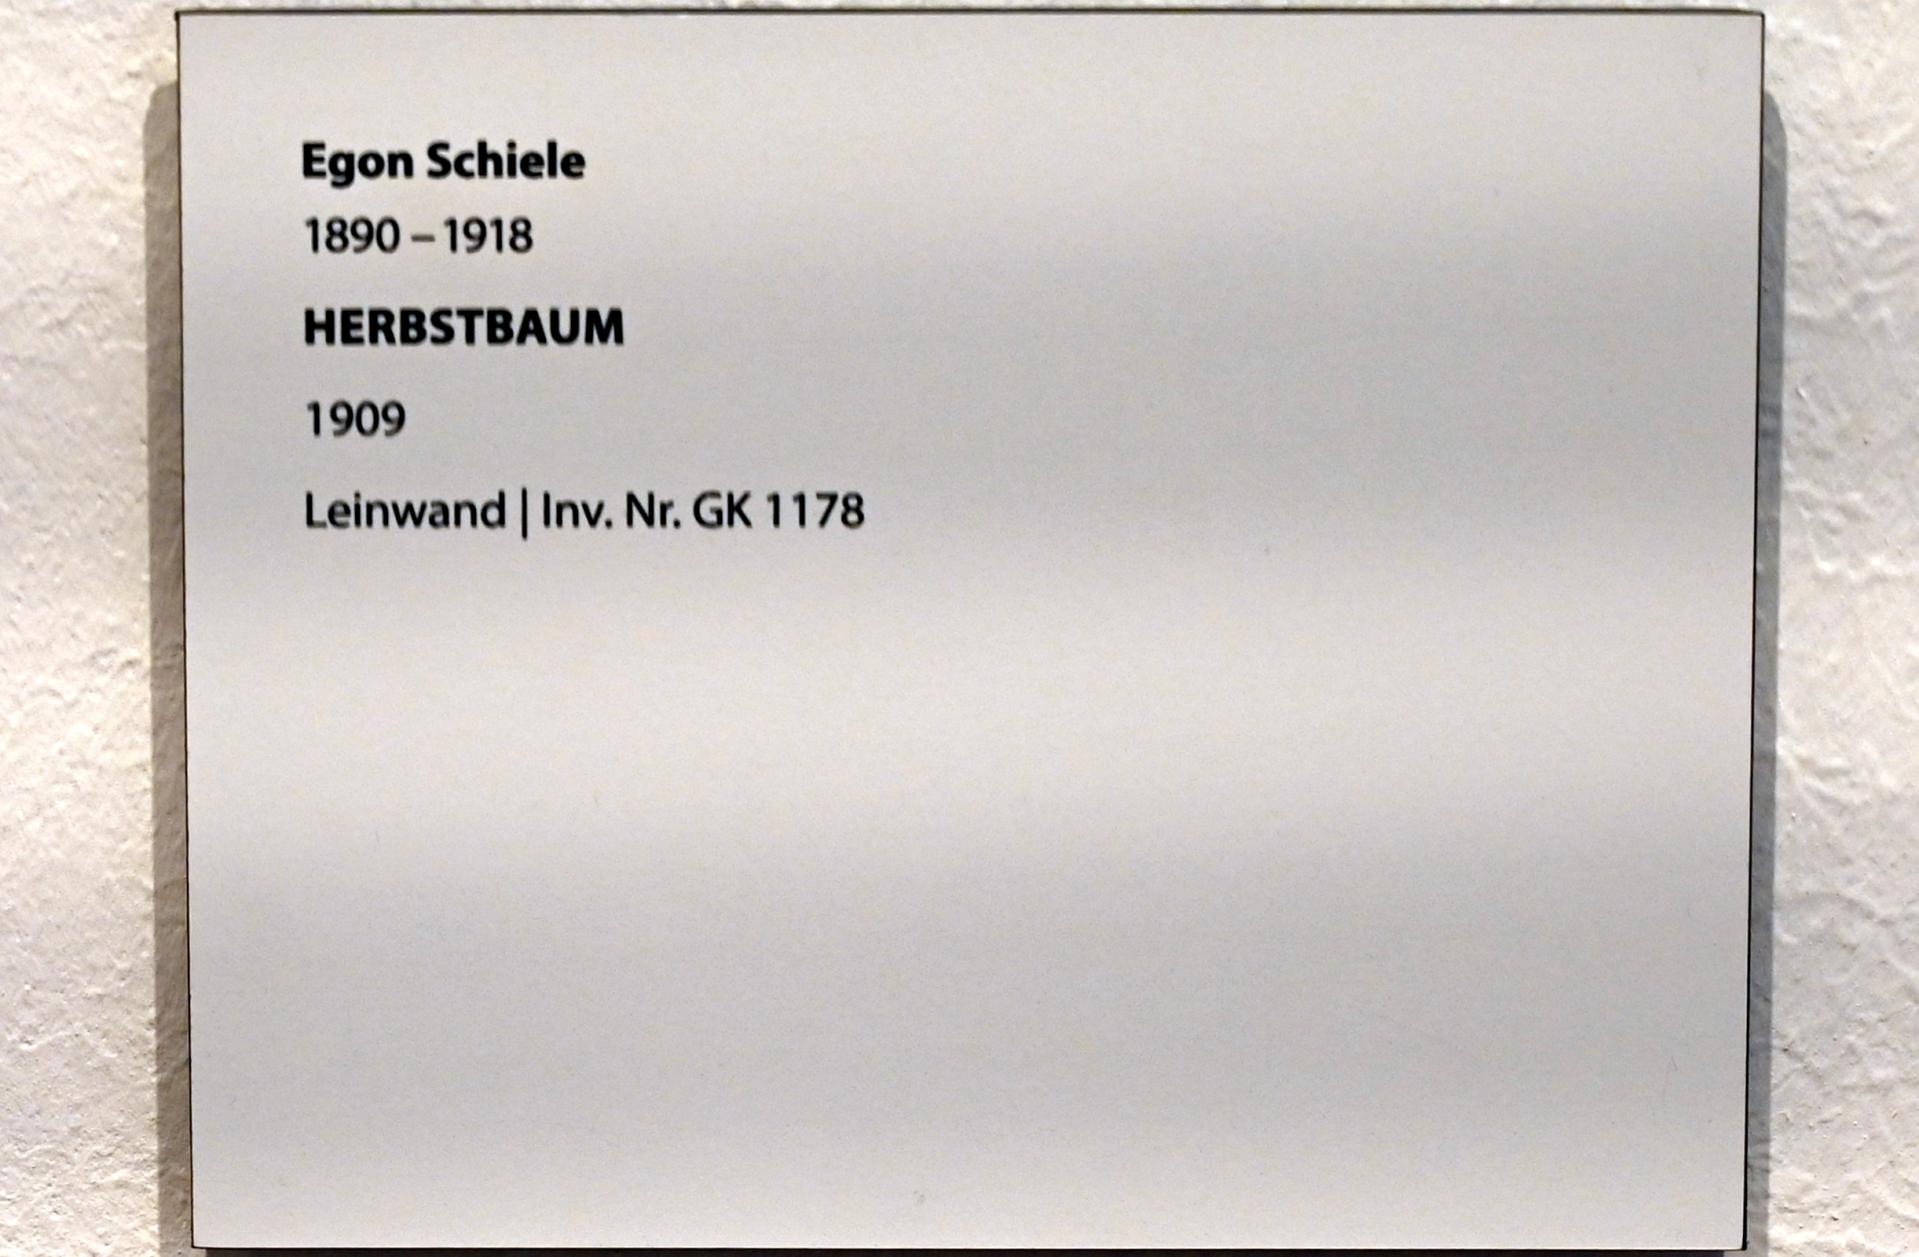 Egon Schiele (1908–1918), Herbstbaum, Darmstadt, Hessisches Landesmuseum, Saal 6, 1909, Bild 2/2